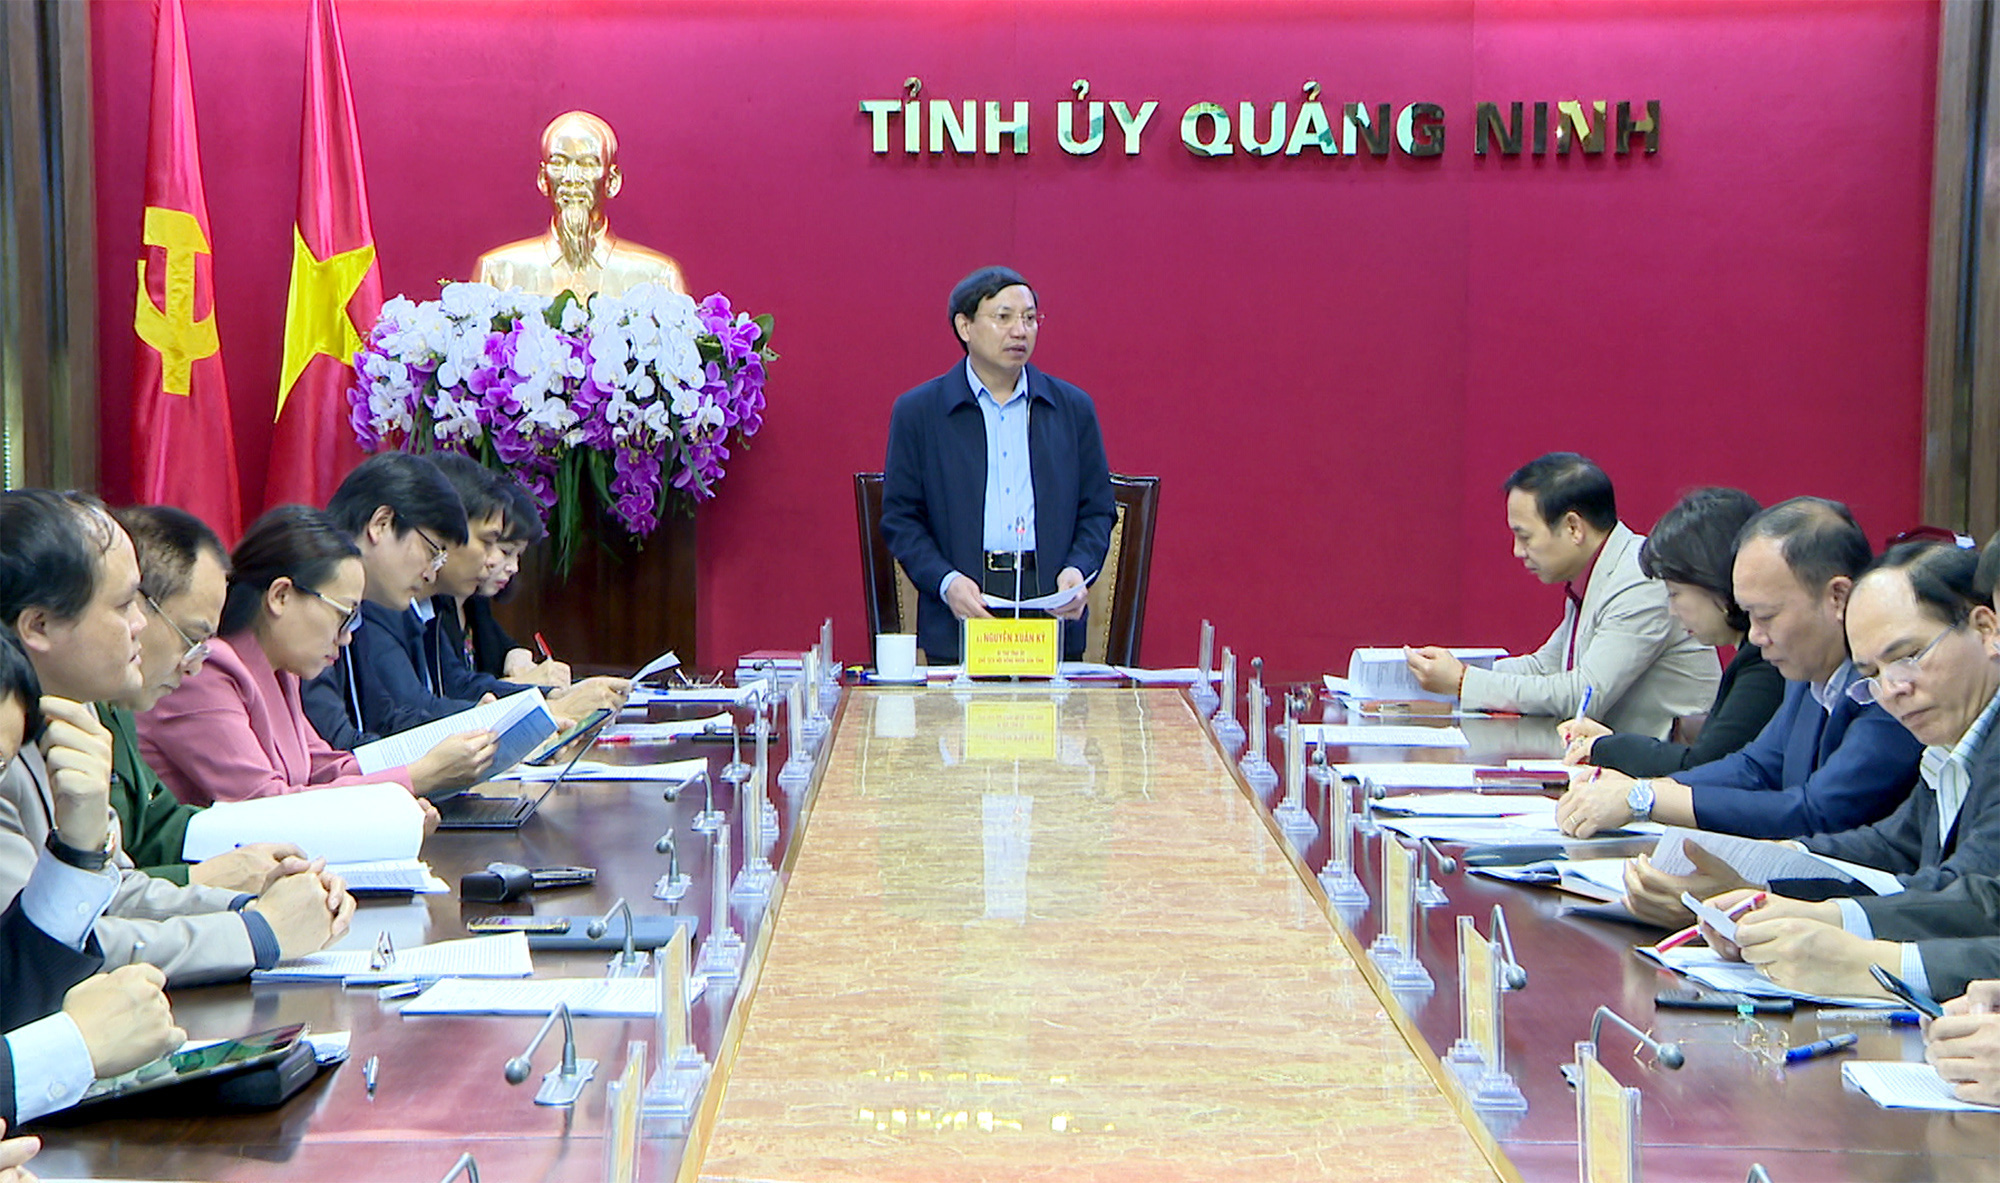 Thông tin văn hóa và du lịch nổi bật tỉnh Quảng Ninh - Ảnh 1.